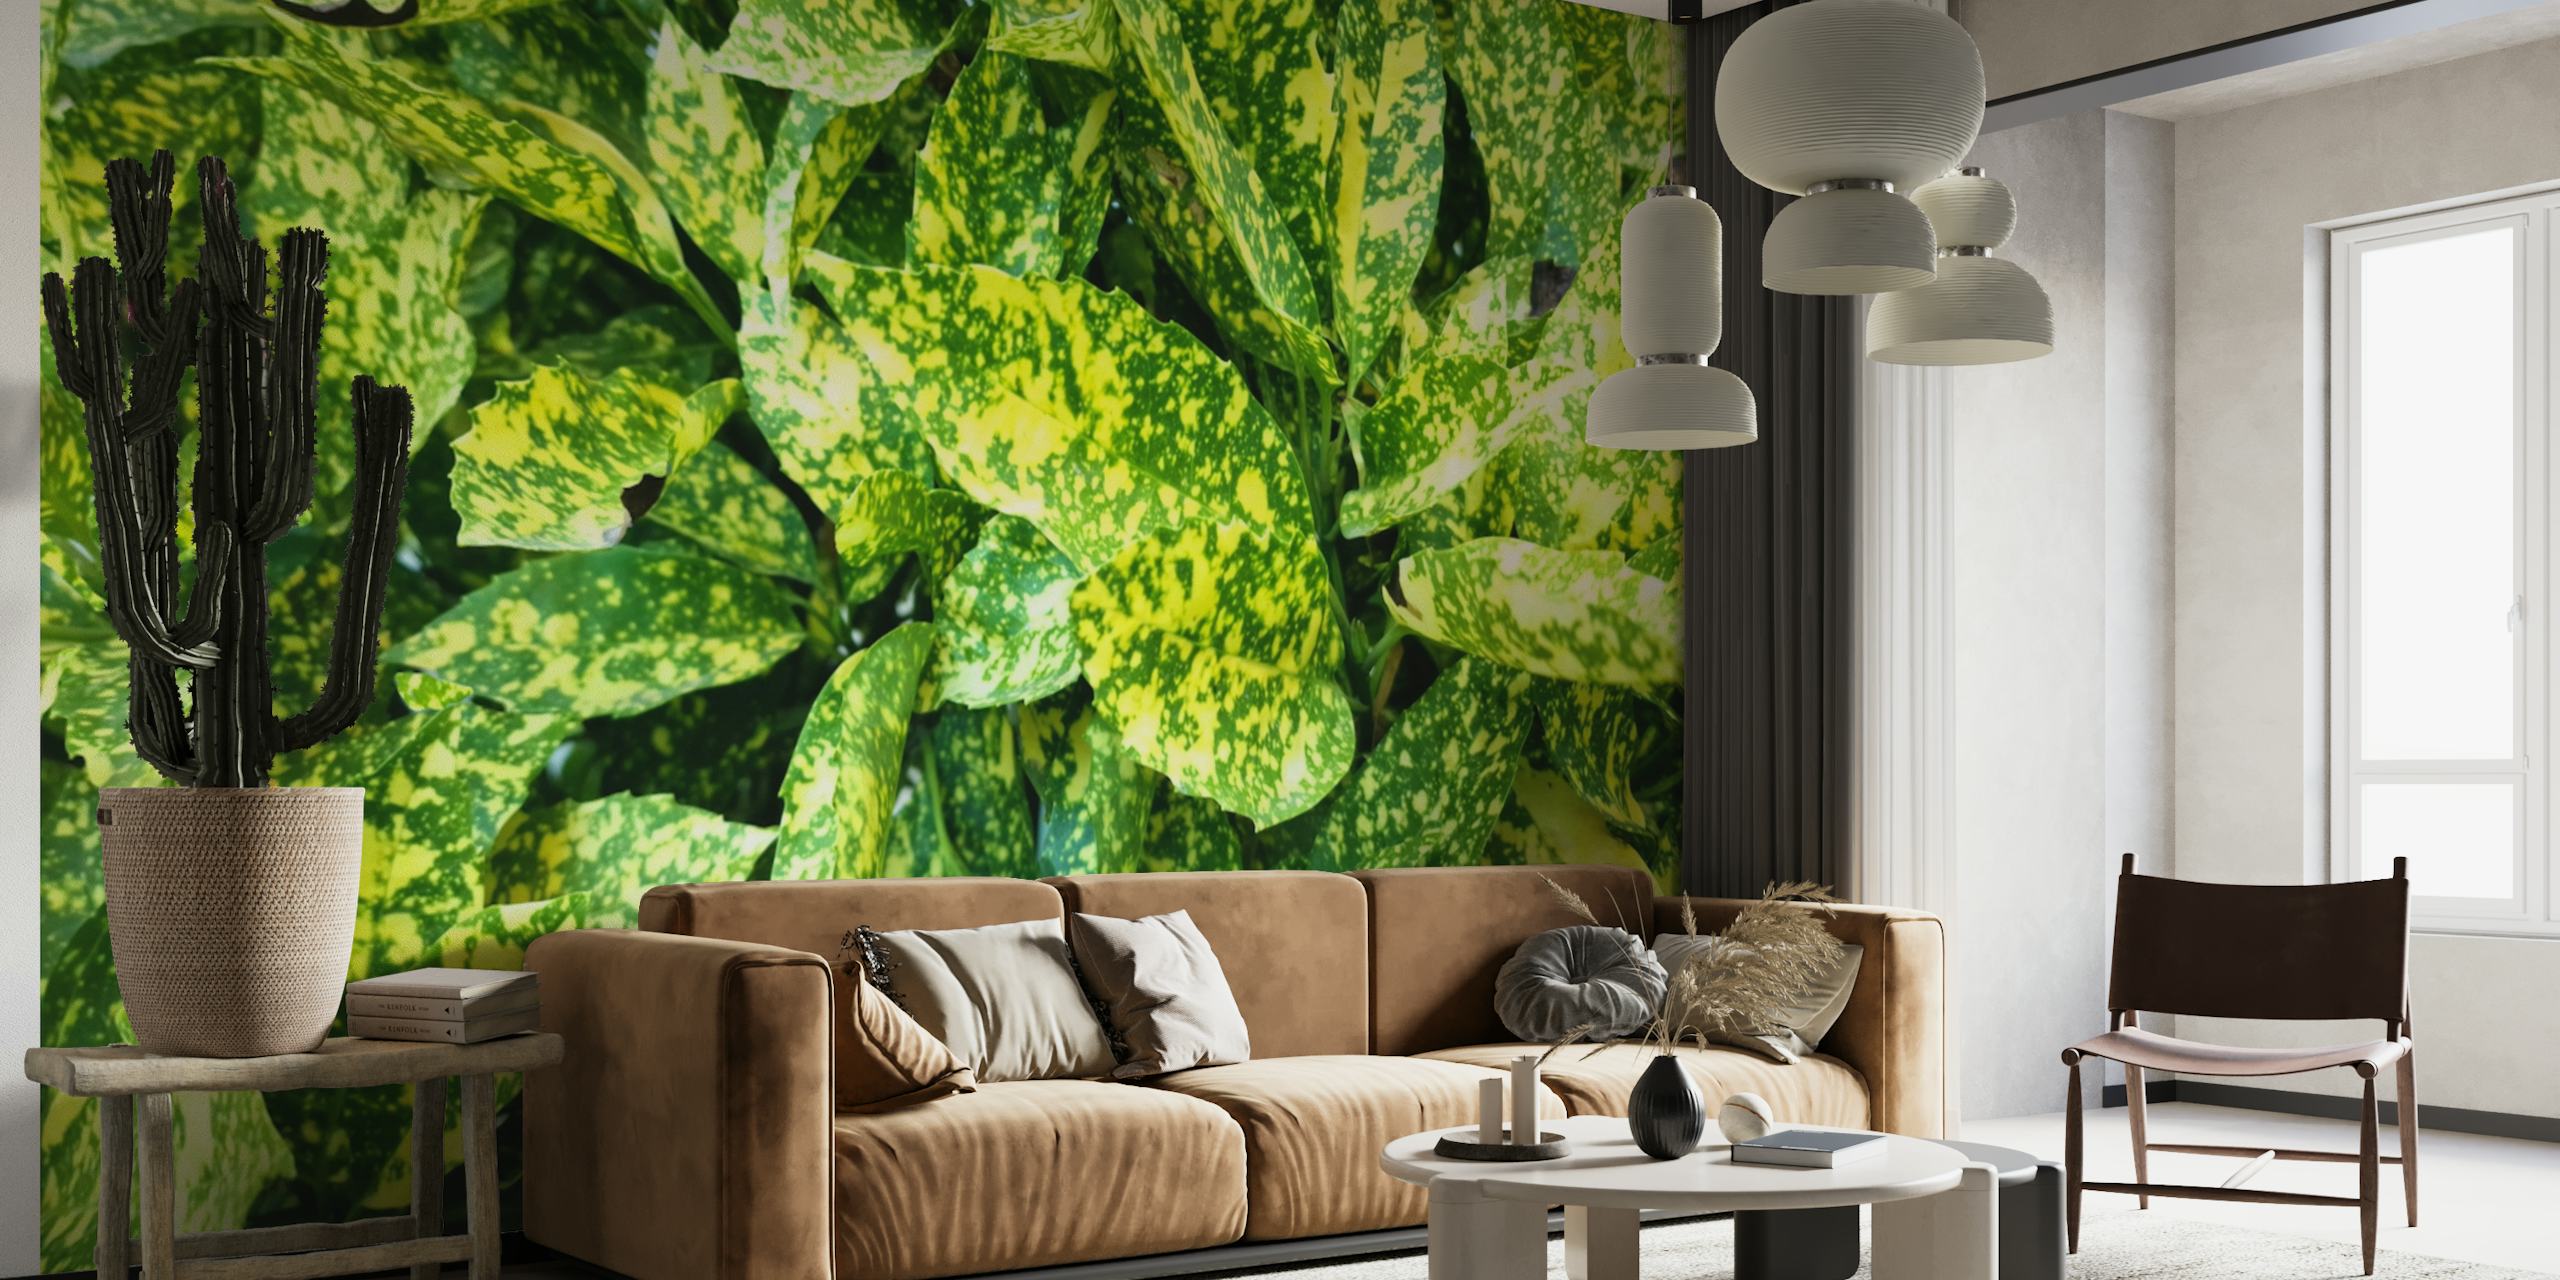 Fotomural con estampado de hojas verdes exuberantes para una decoración interior tranquila